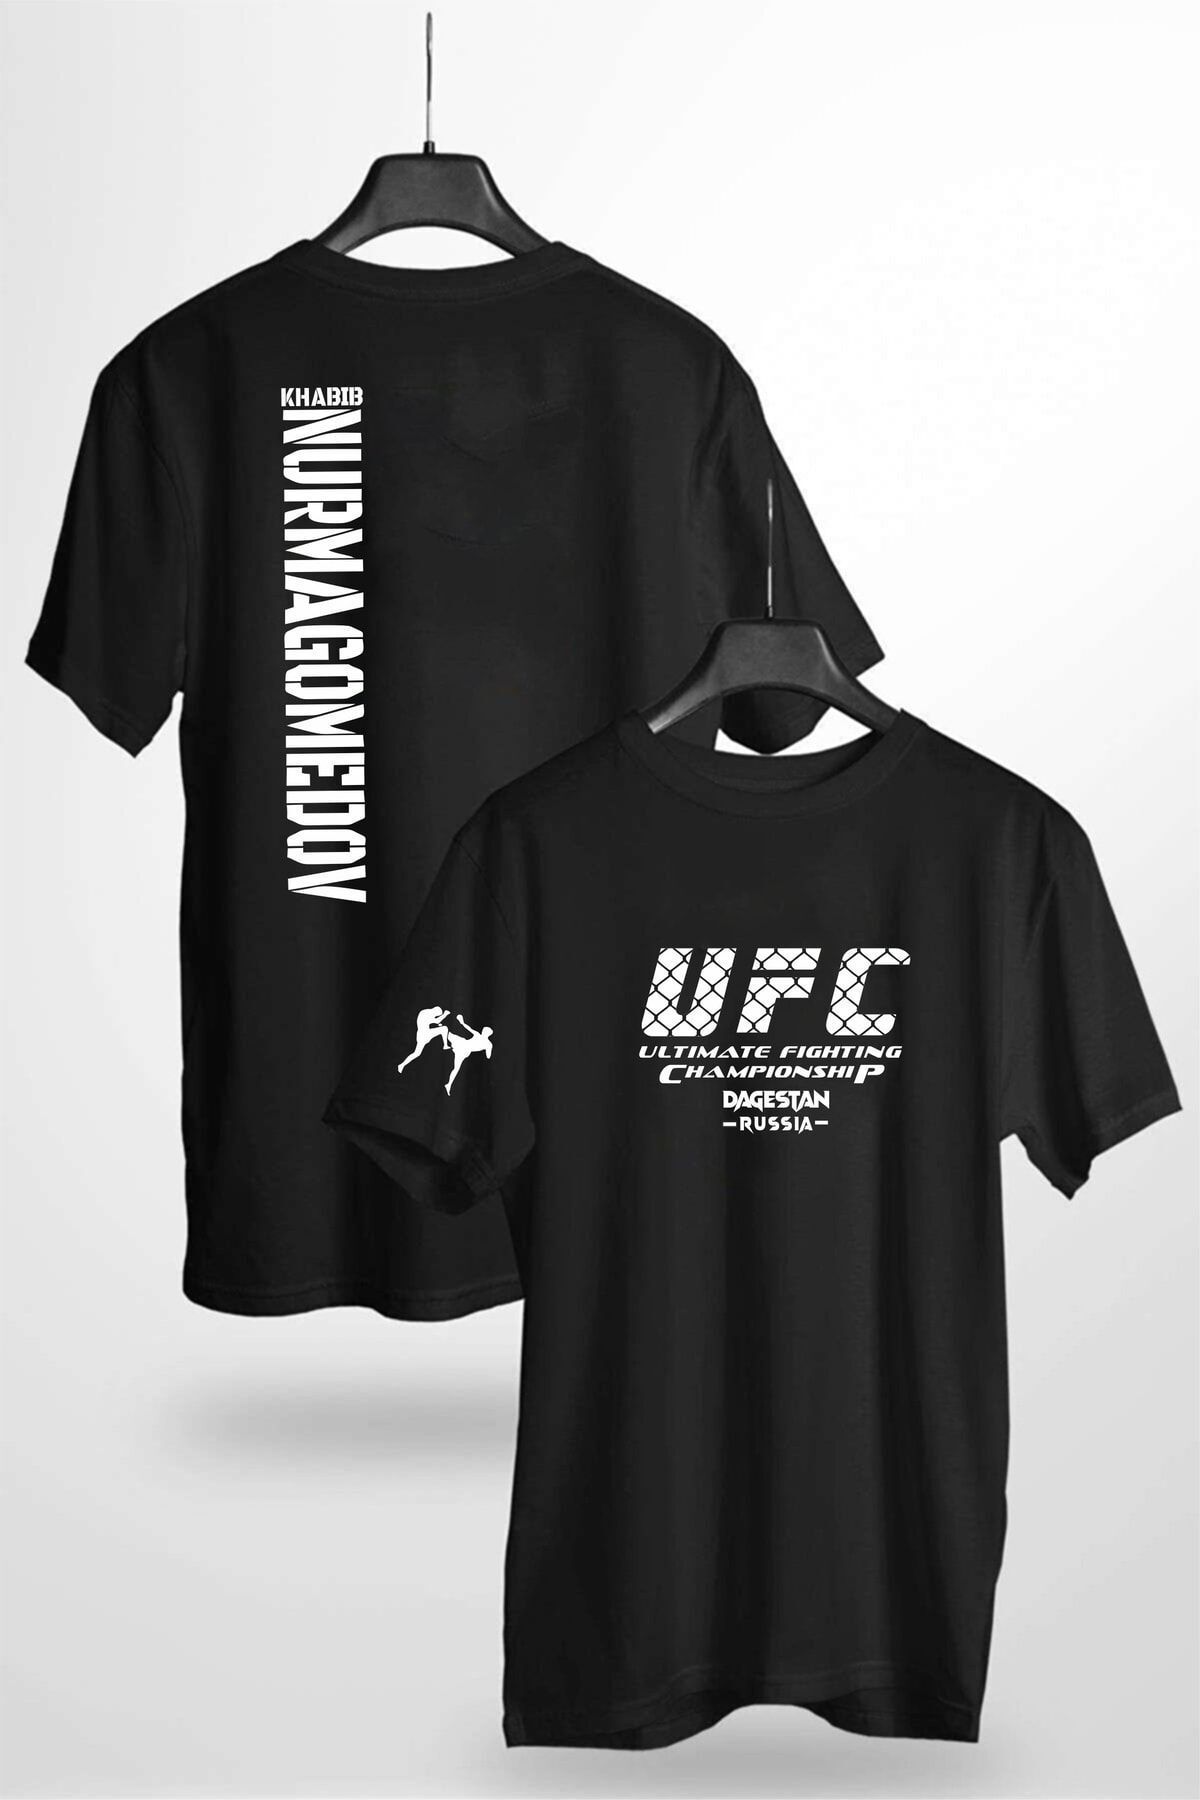 LEIVOR Khabib Nurmagomedov Ufc Baskılı Pamuk T-shirt